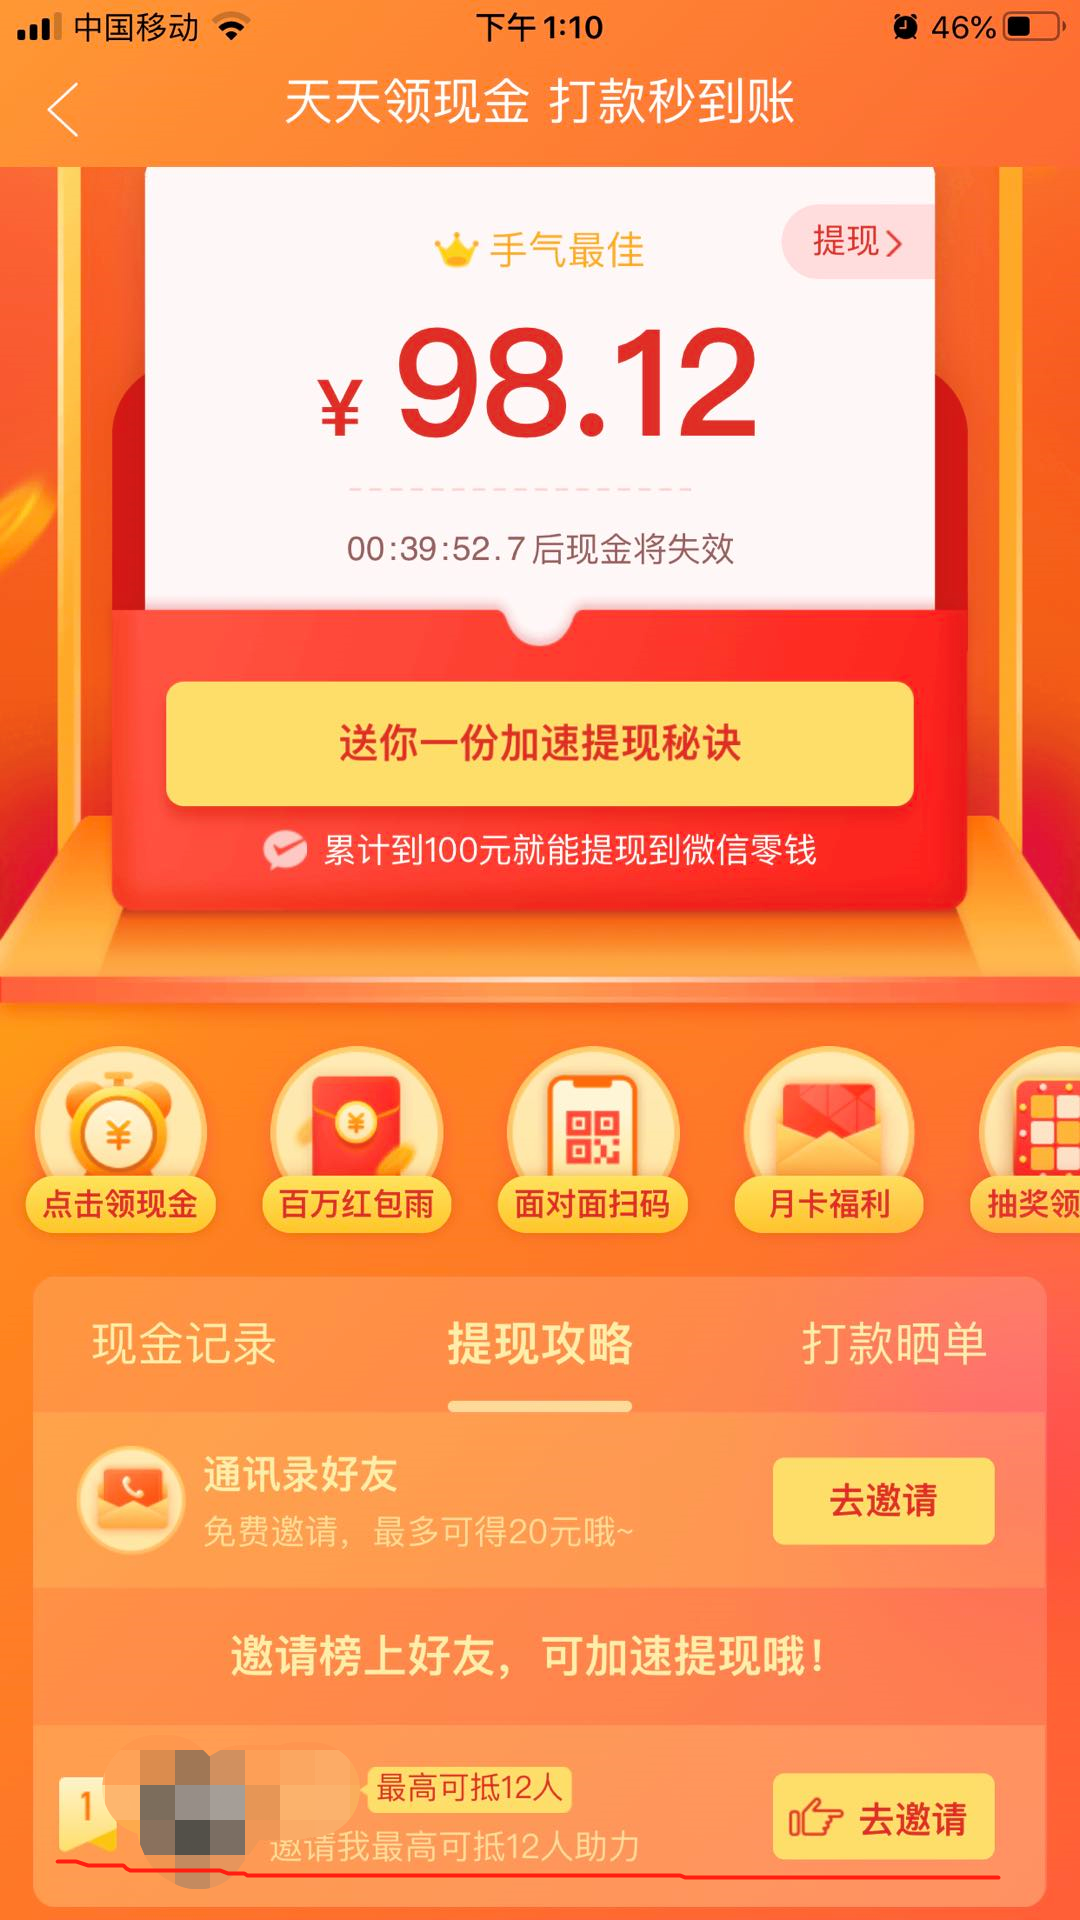 2019悦动圈v3.2.6.7.3老旧历史版本安装包官方免费下载_豌豆荚